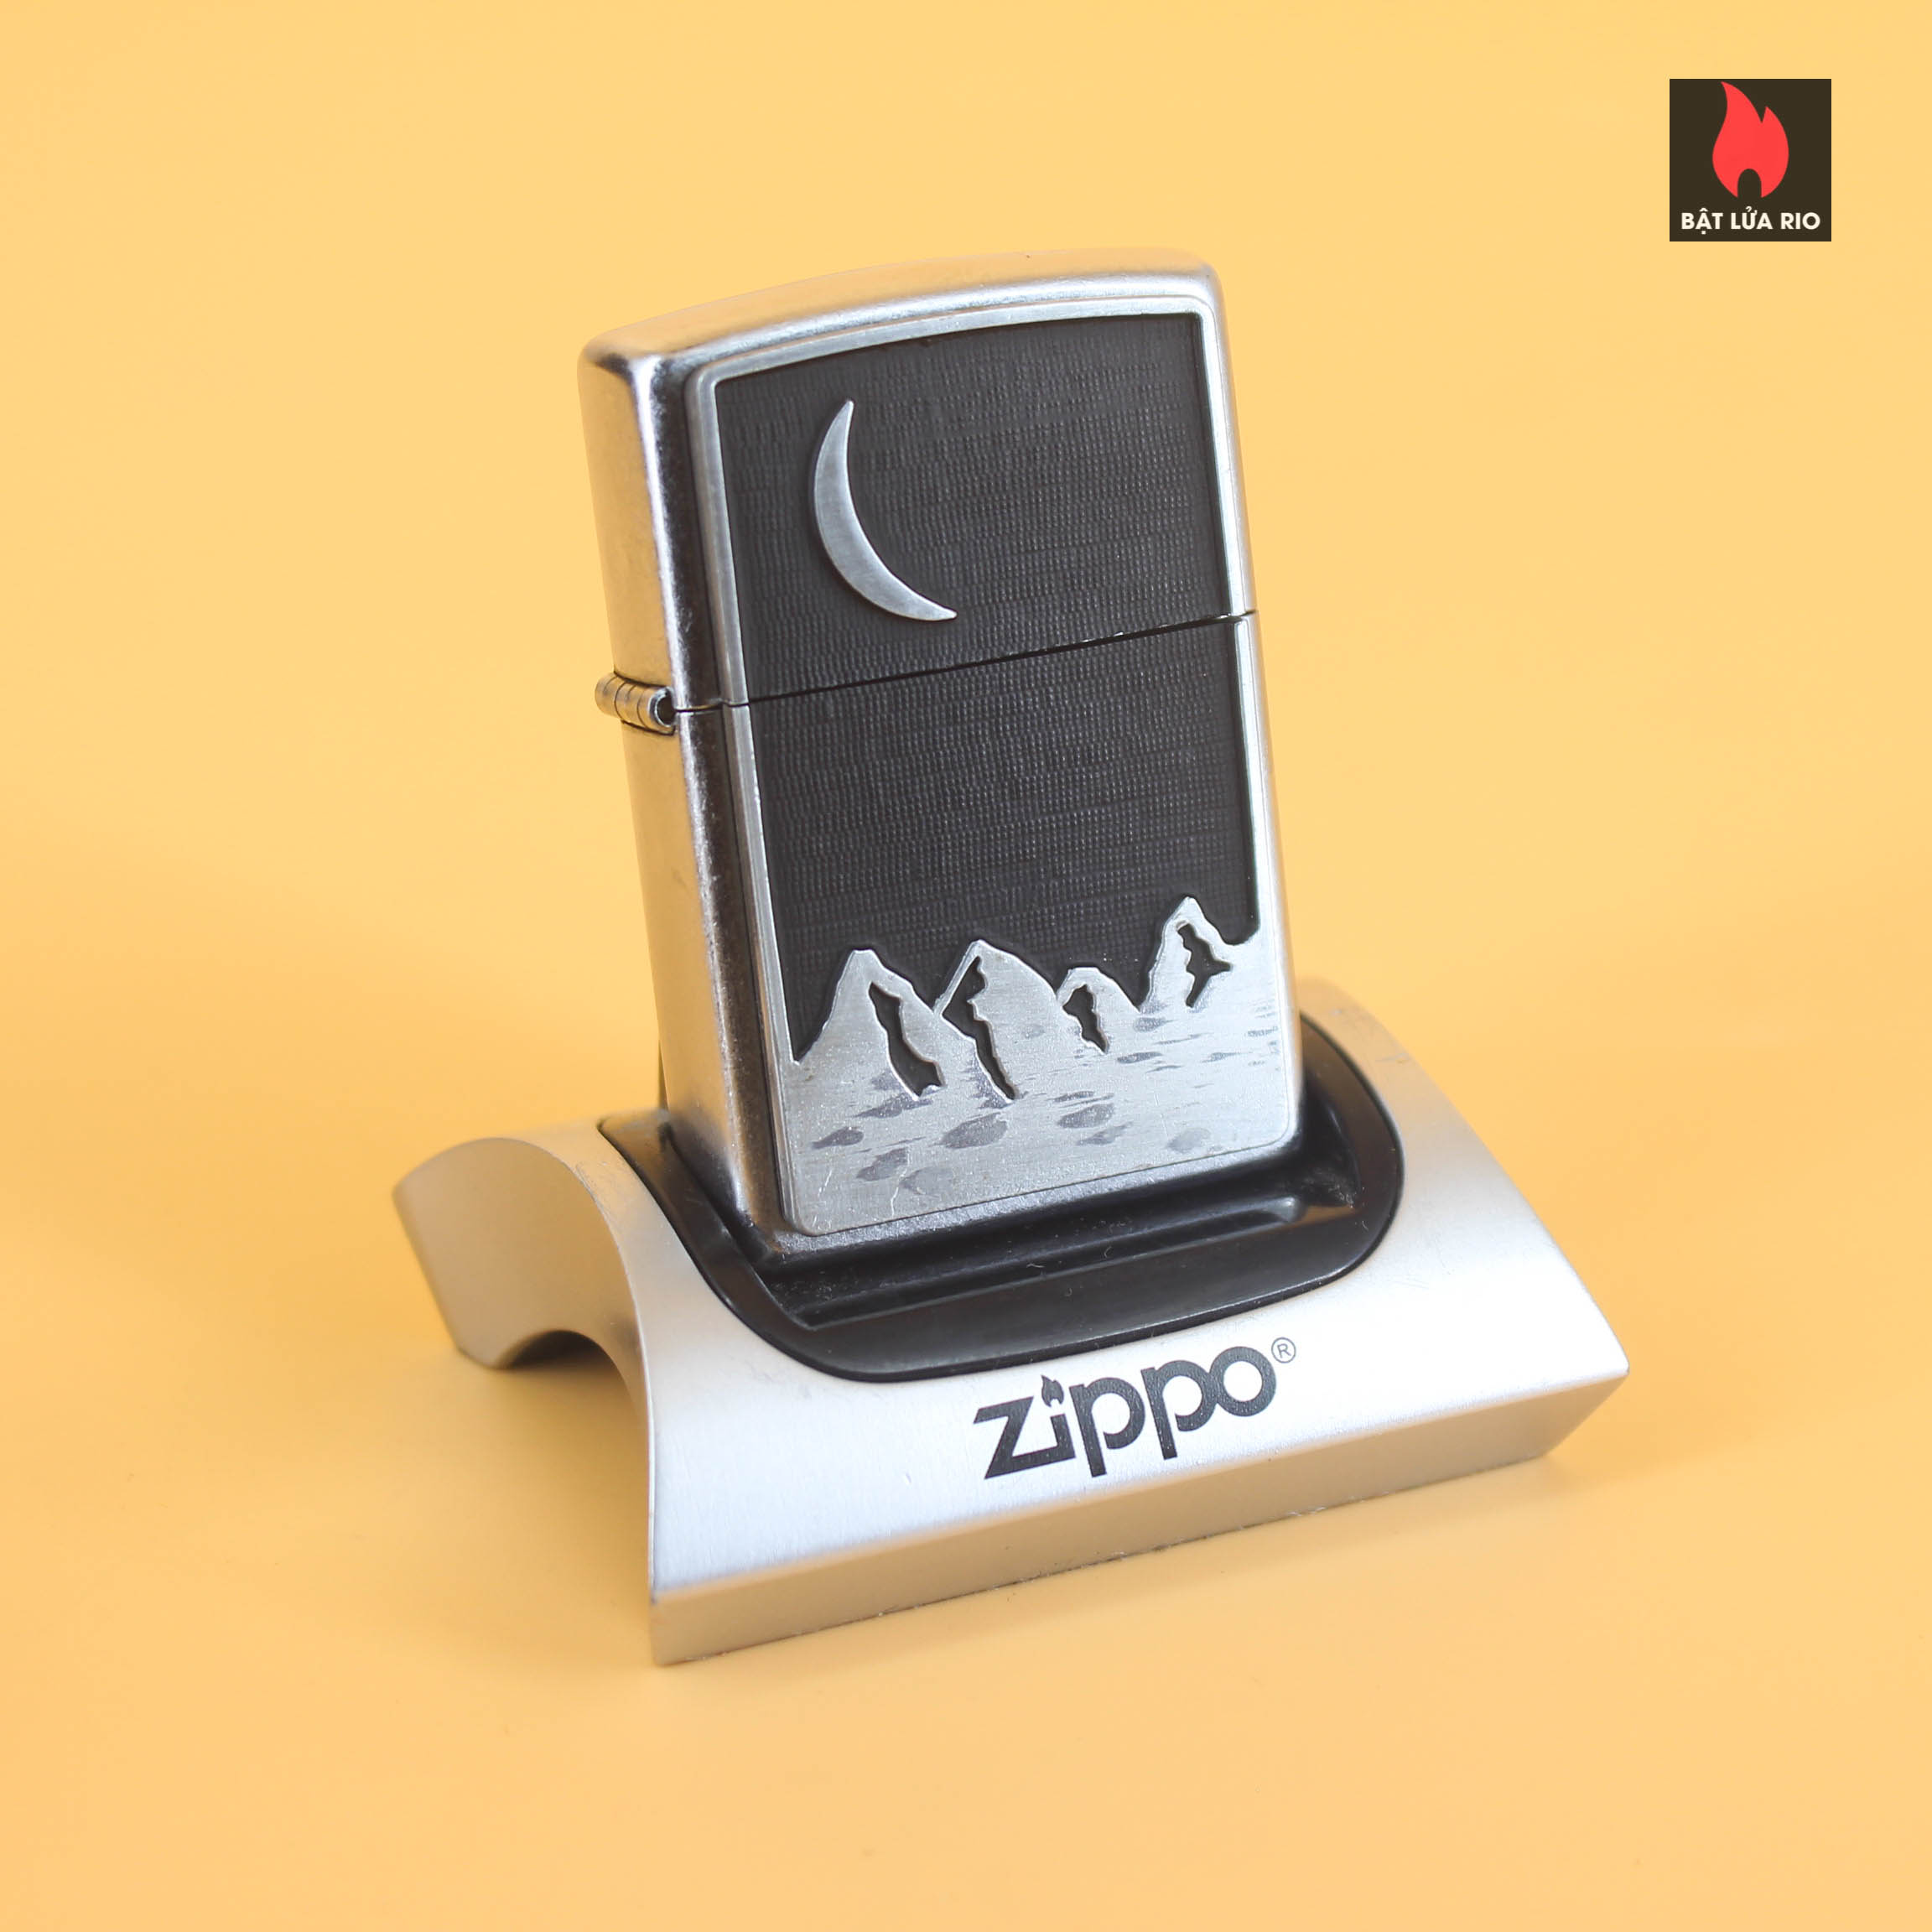 Zippo La Mã 2000 – Marlboro – Crescent Moon And Mountain Scene